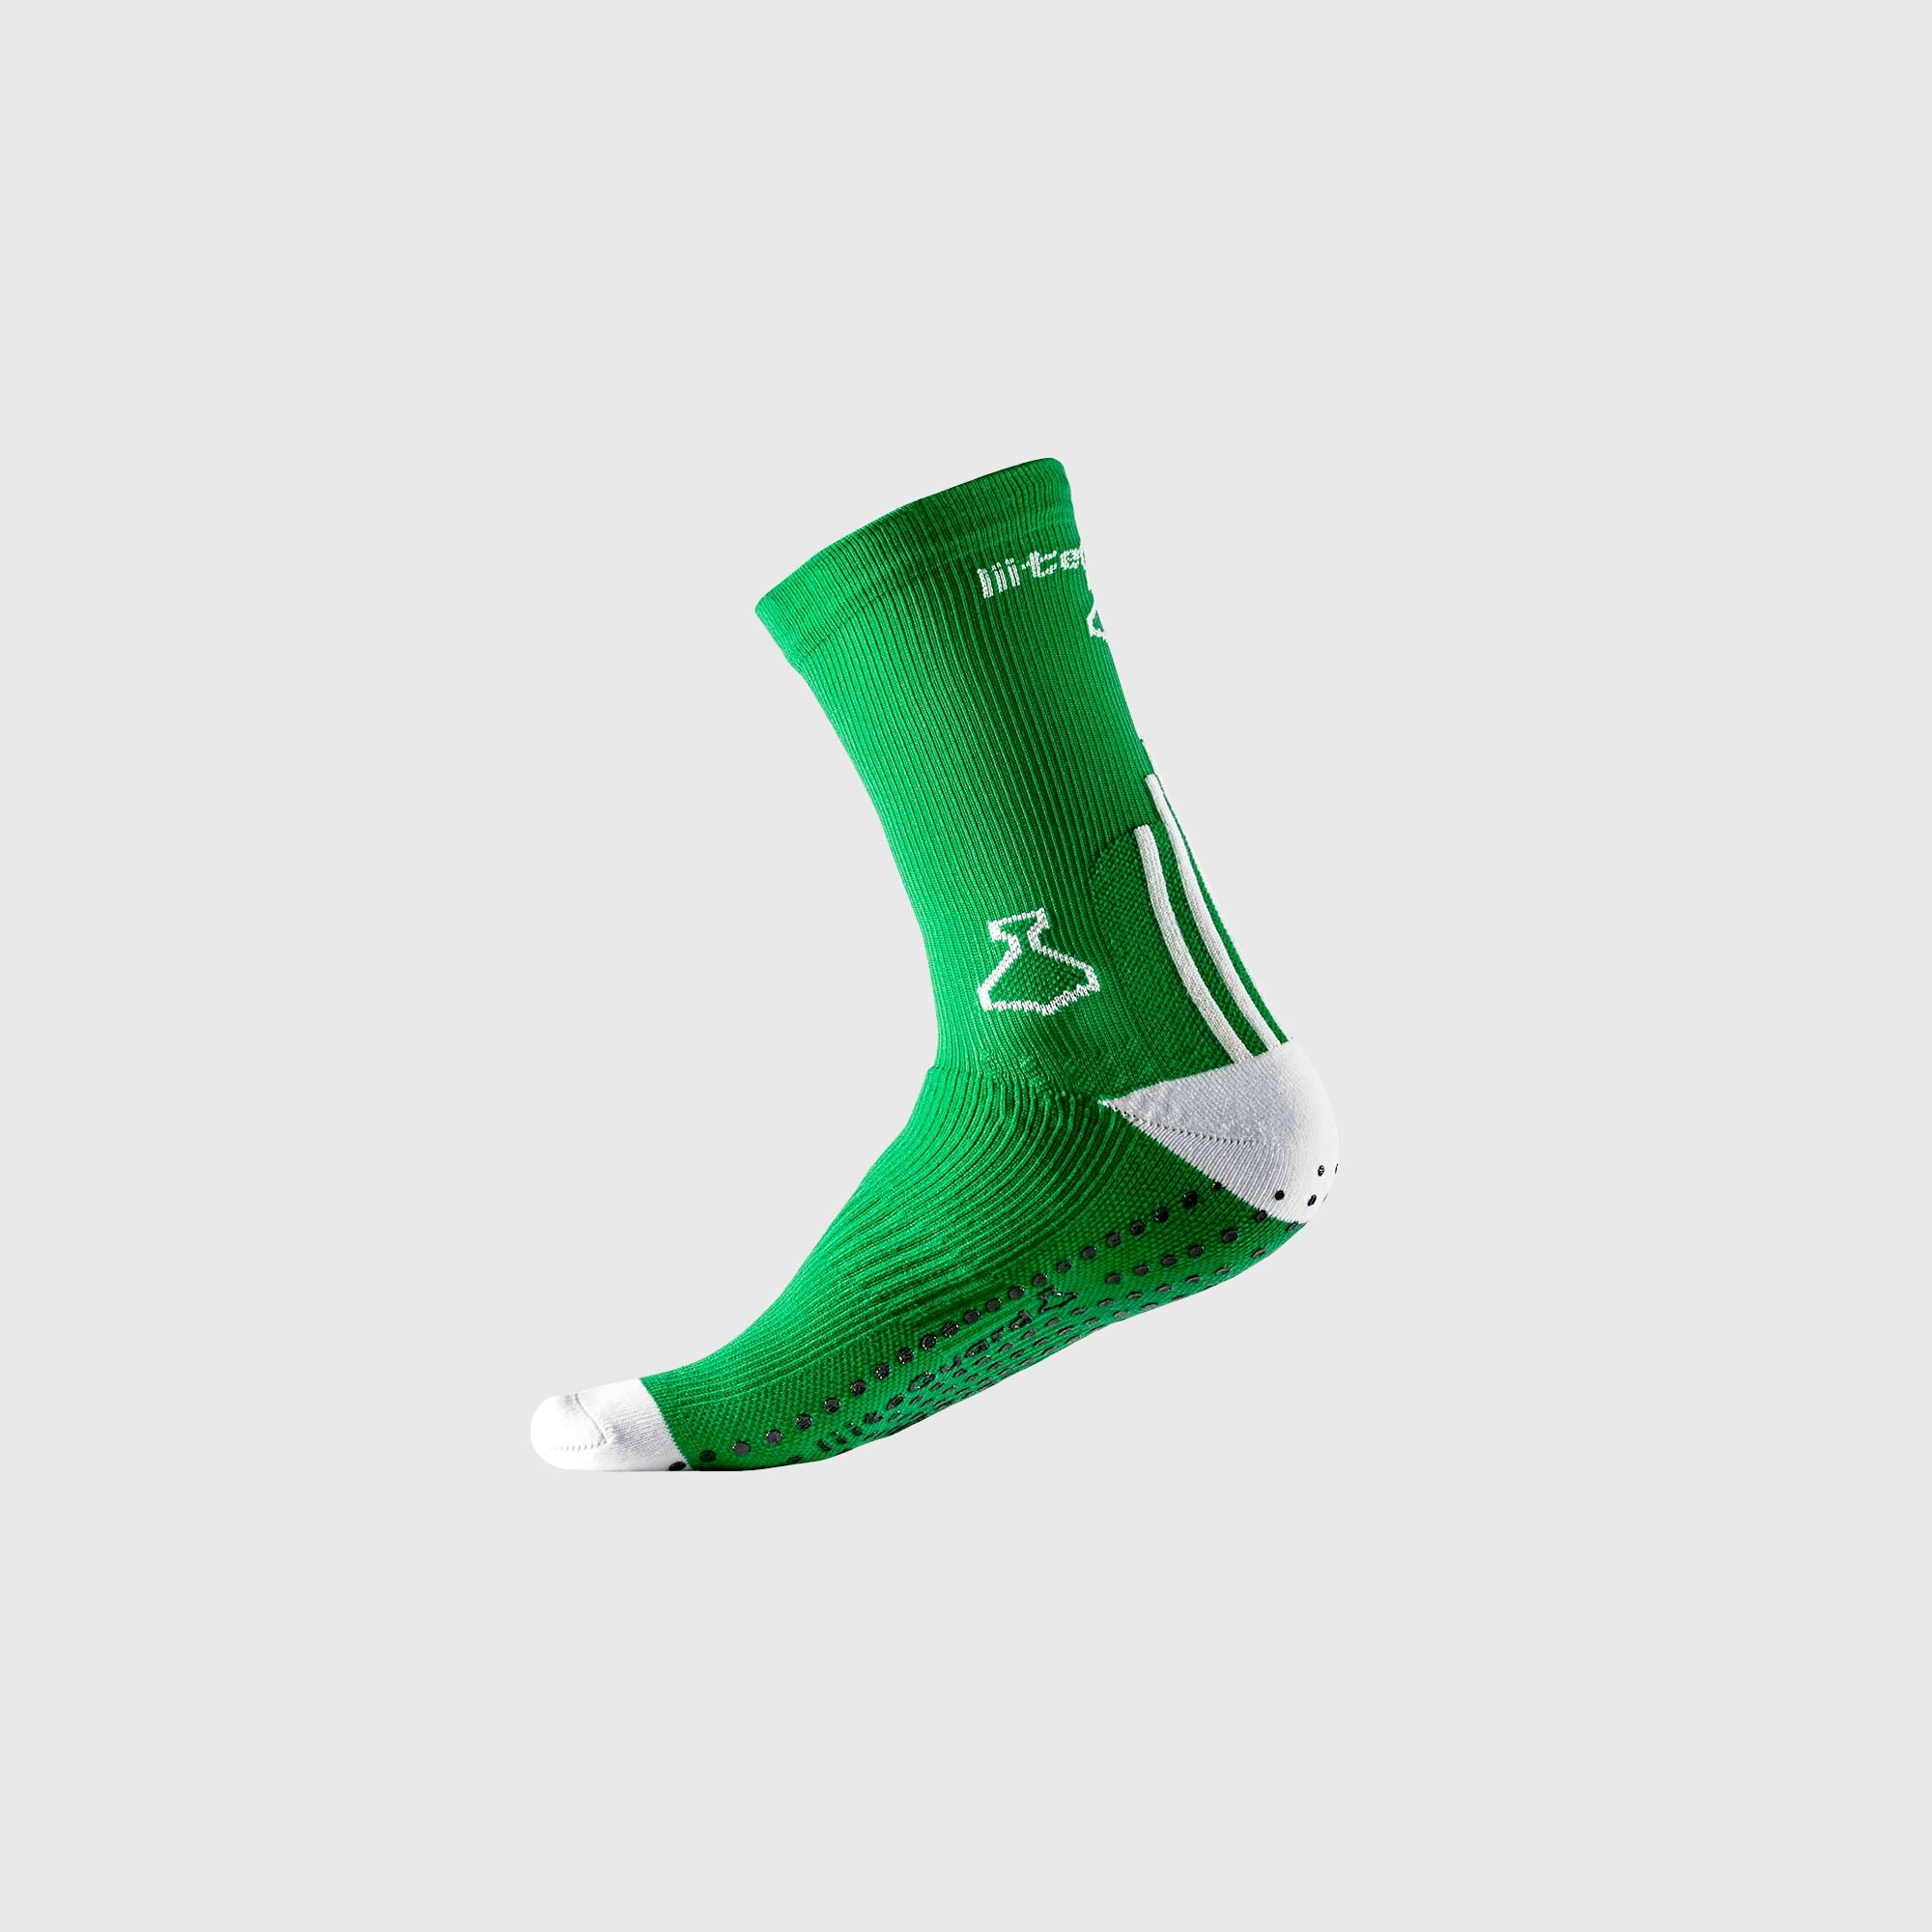 Liiteguard PRO-TECH SOCK Medium socks Green